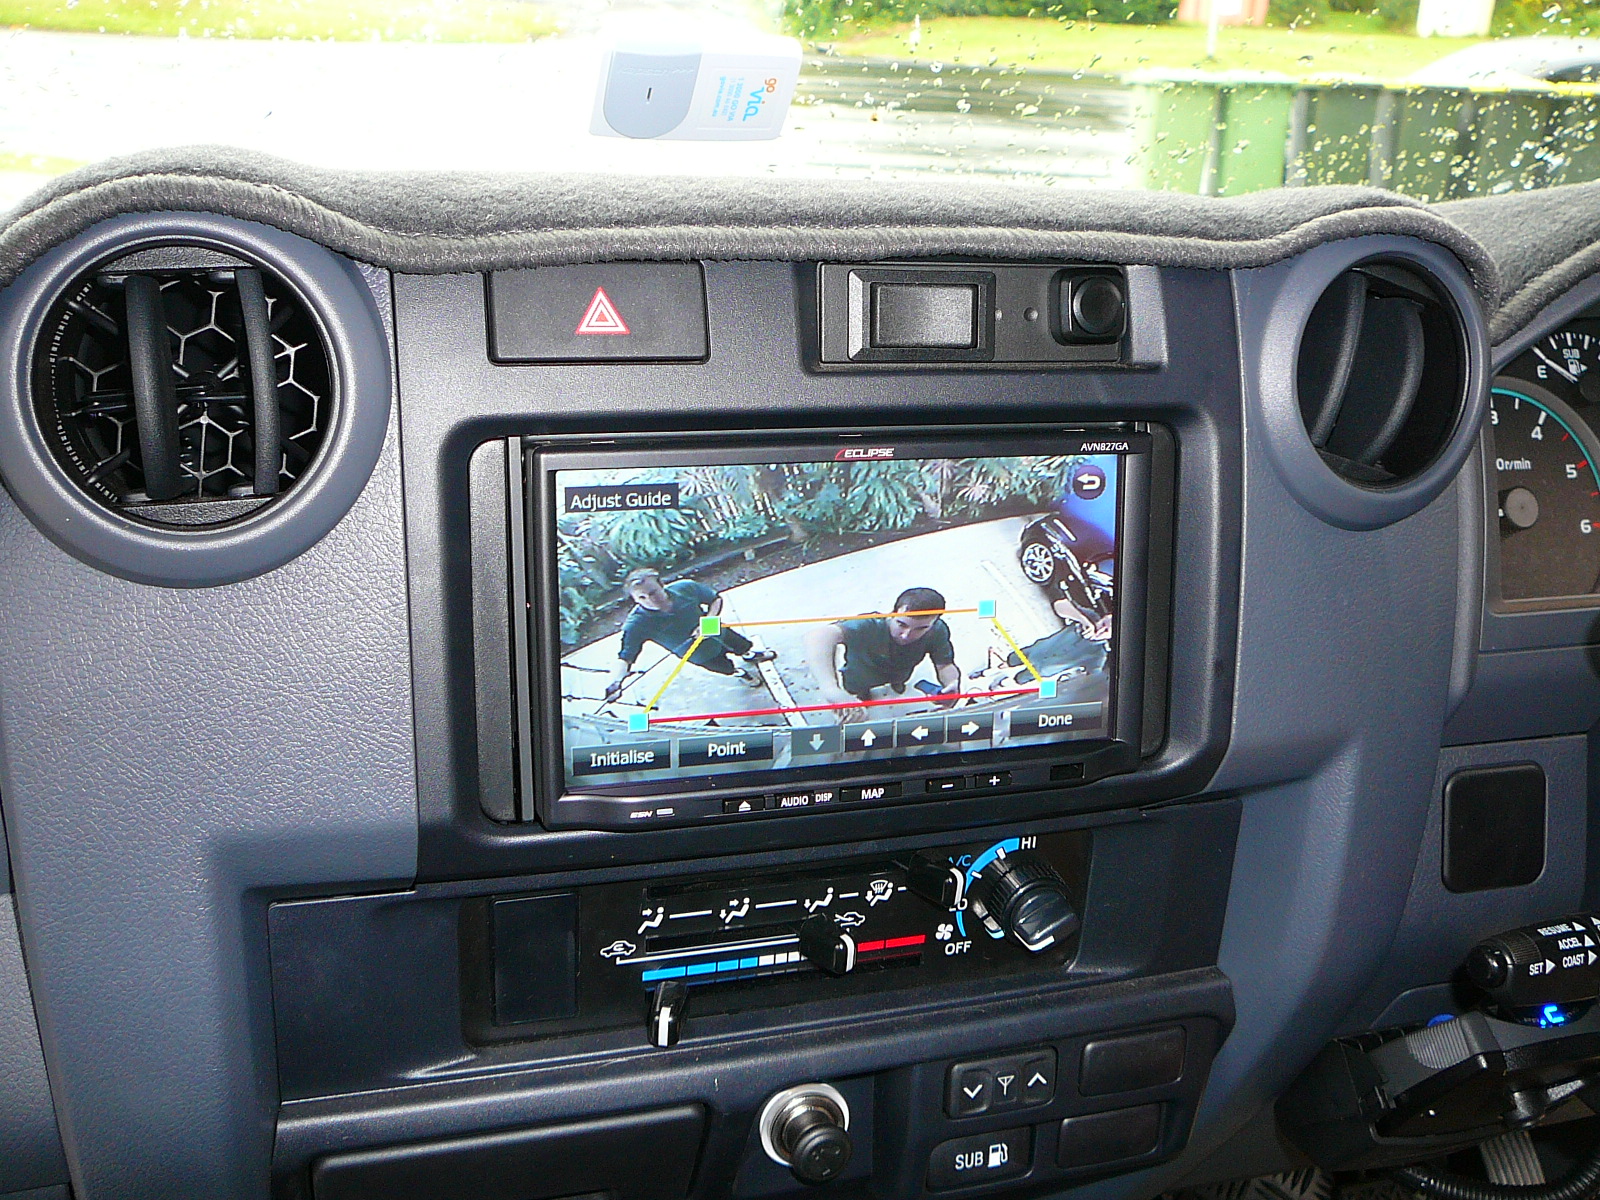 Toyota Landcruiser & Horsefloat Navigation & Triple Camera Setup